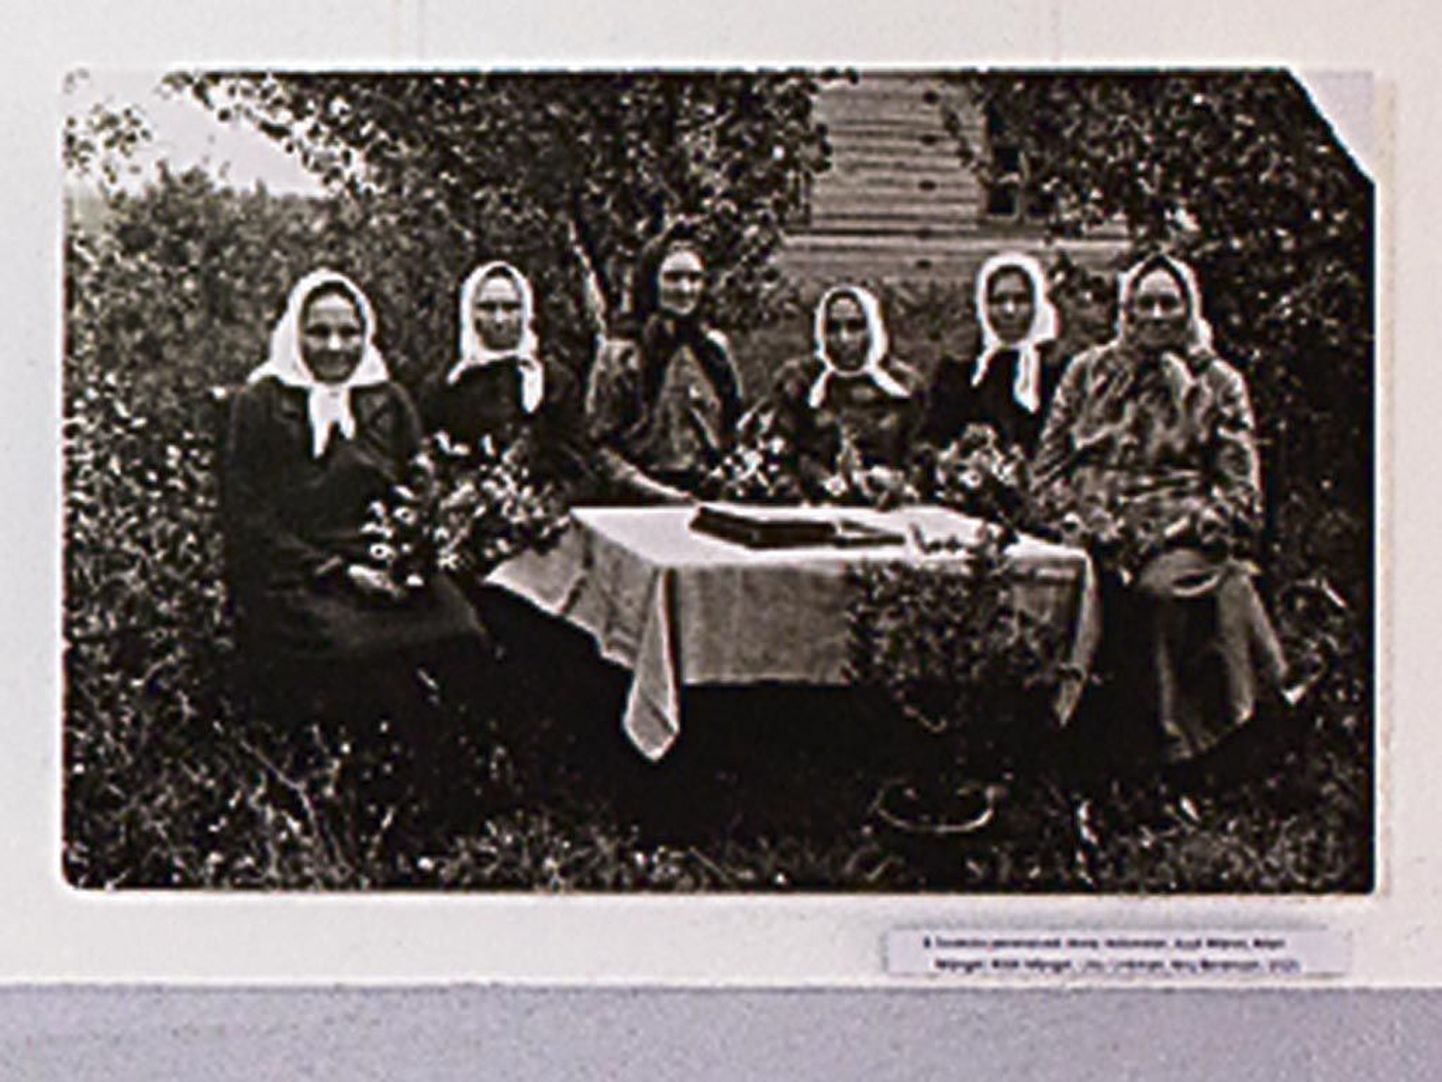 Pilt näituselt: Soeküla perenaised 1925. aastal.